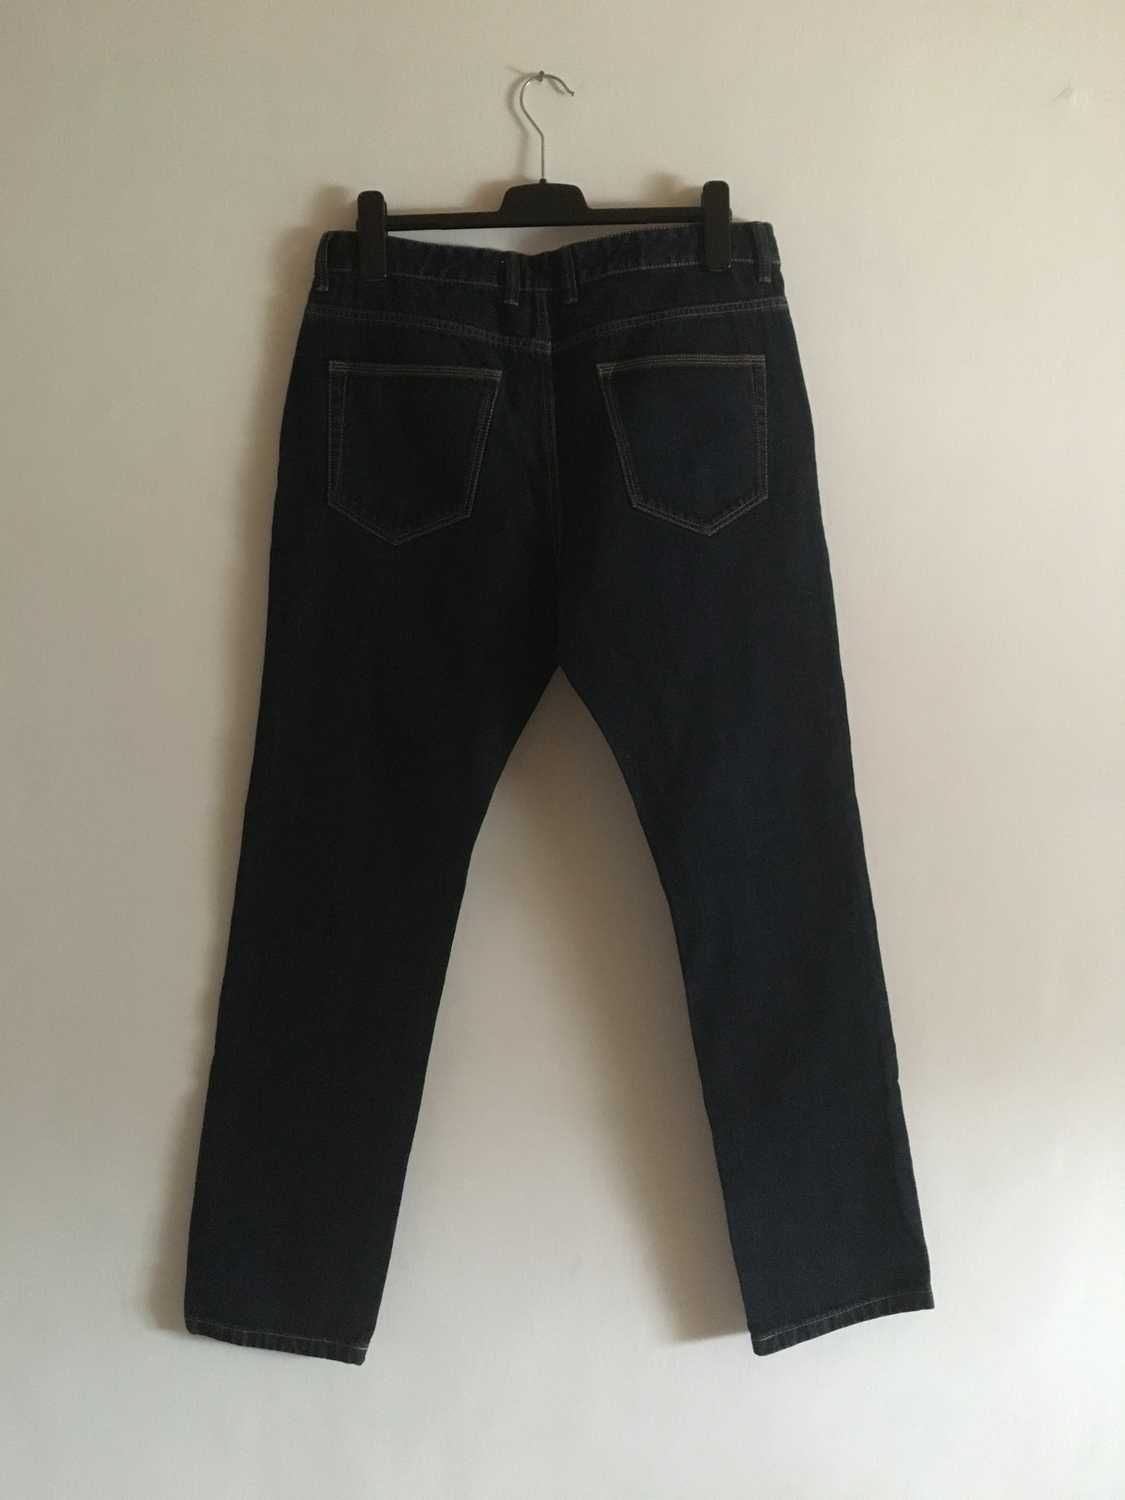 Spodnie meskie jeans London NEXT 36 blue slim navy skinny